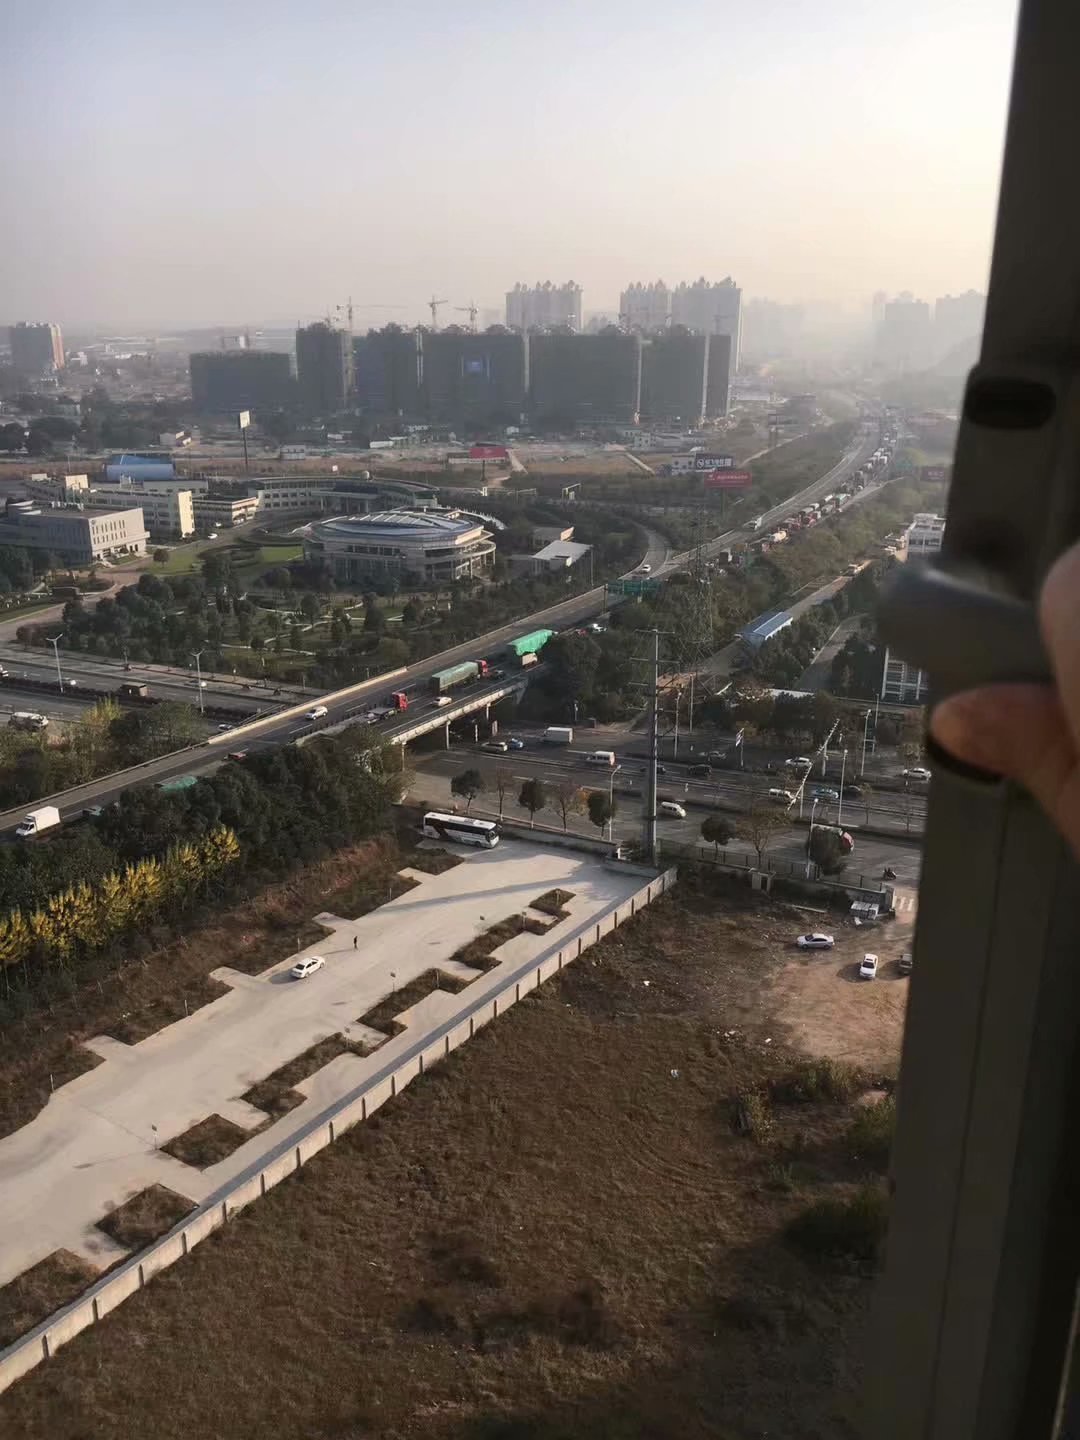 隔绝京珠高速公路噪音选择长沙隔音窗静美家隔音窗